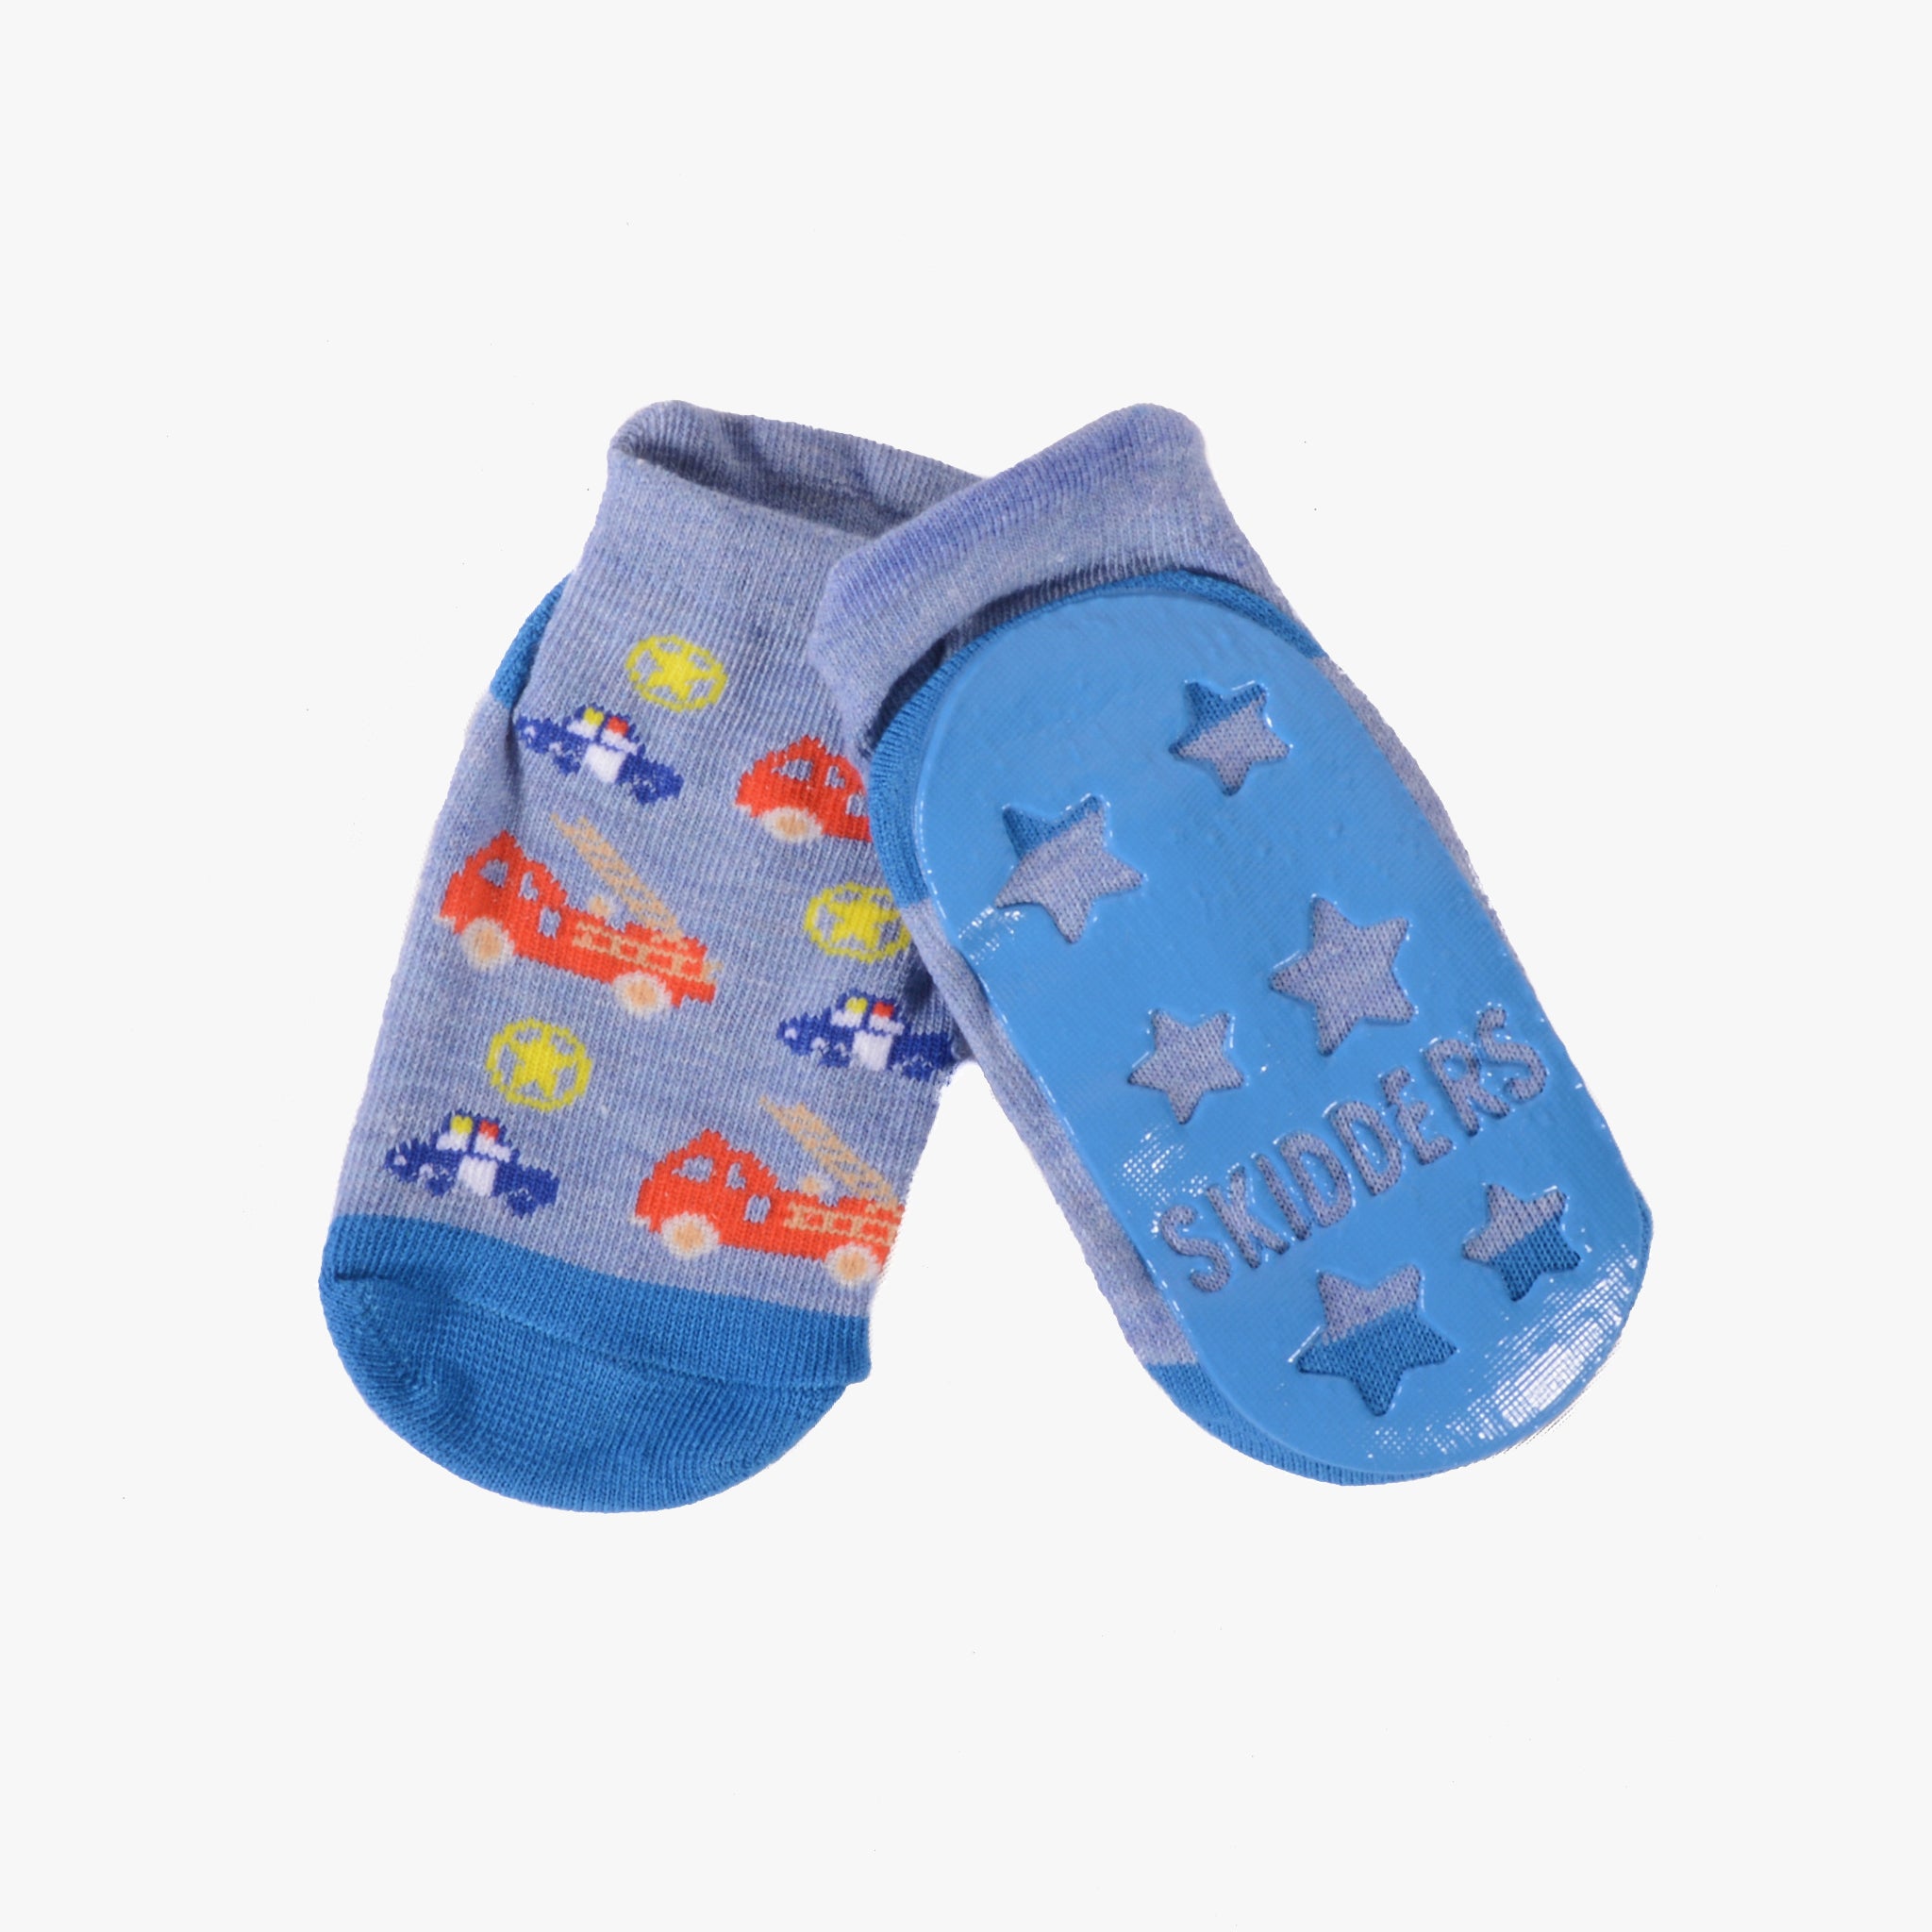  Grip Socks For Kids